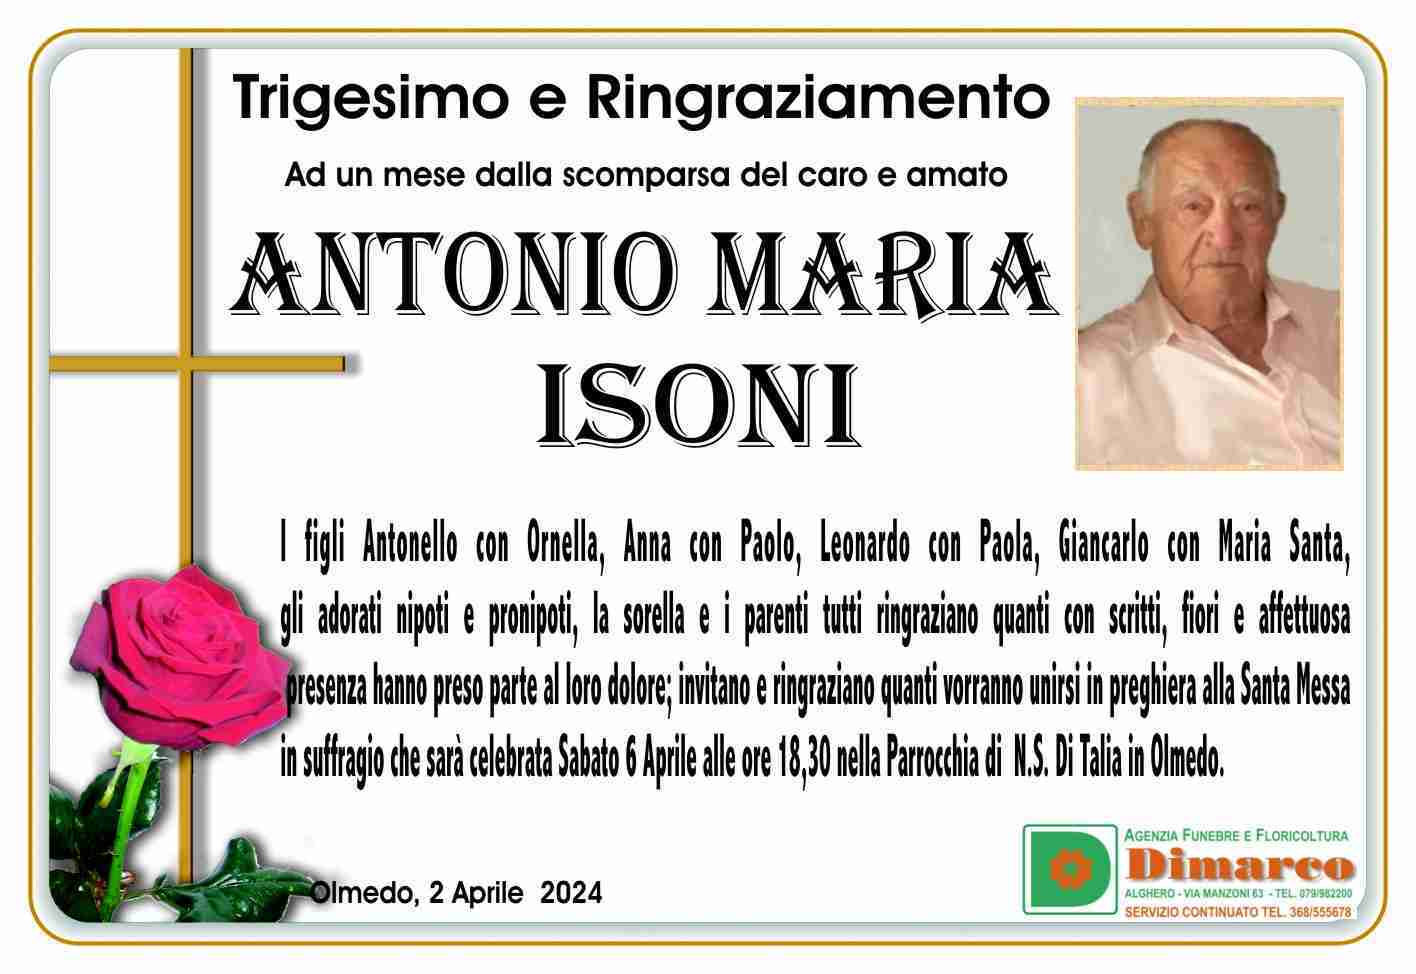 Antonio Maria Isoni